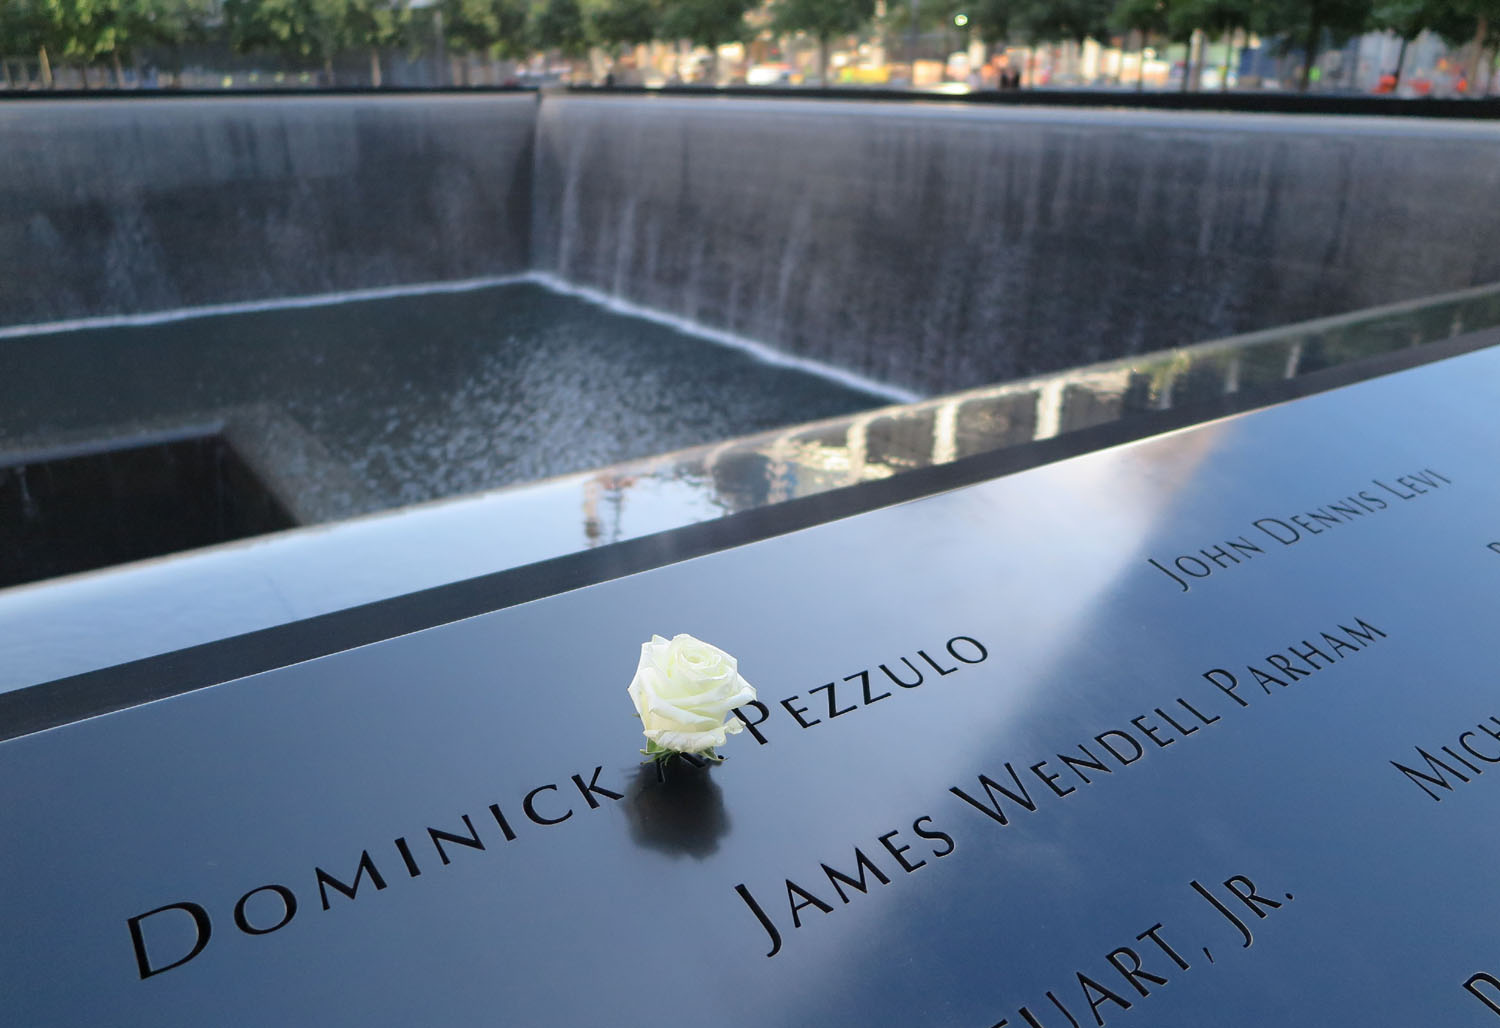 New-York-City-9-11-Memorial